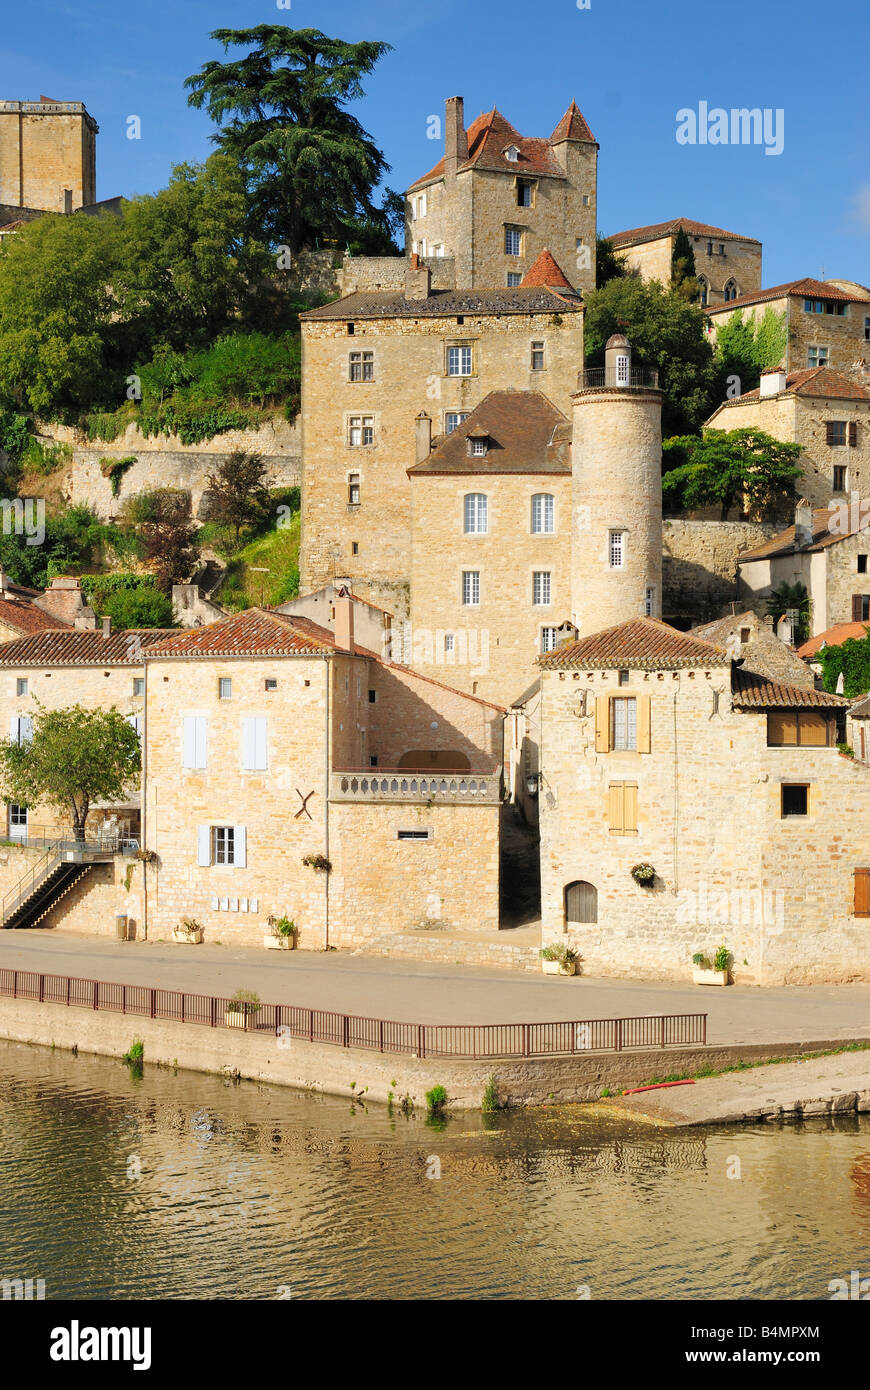 Village médiévale de Puy l'Eveque sur le Lot Midi Pyrénées France Banque D'Images